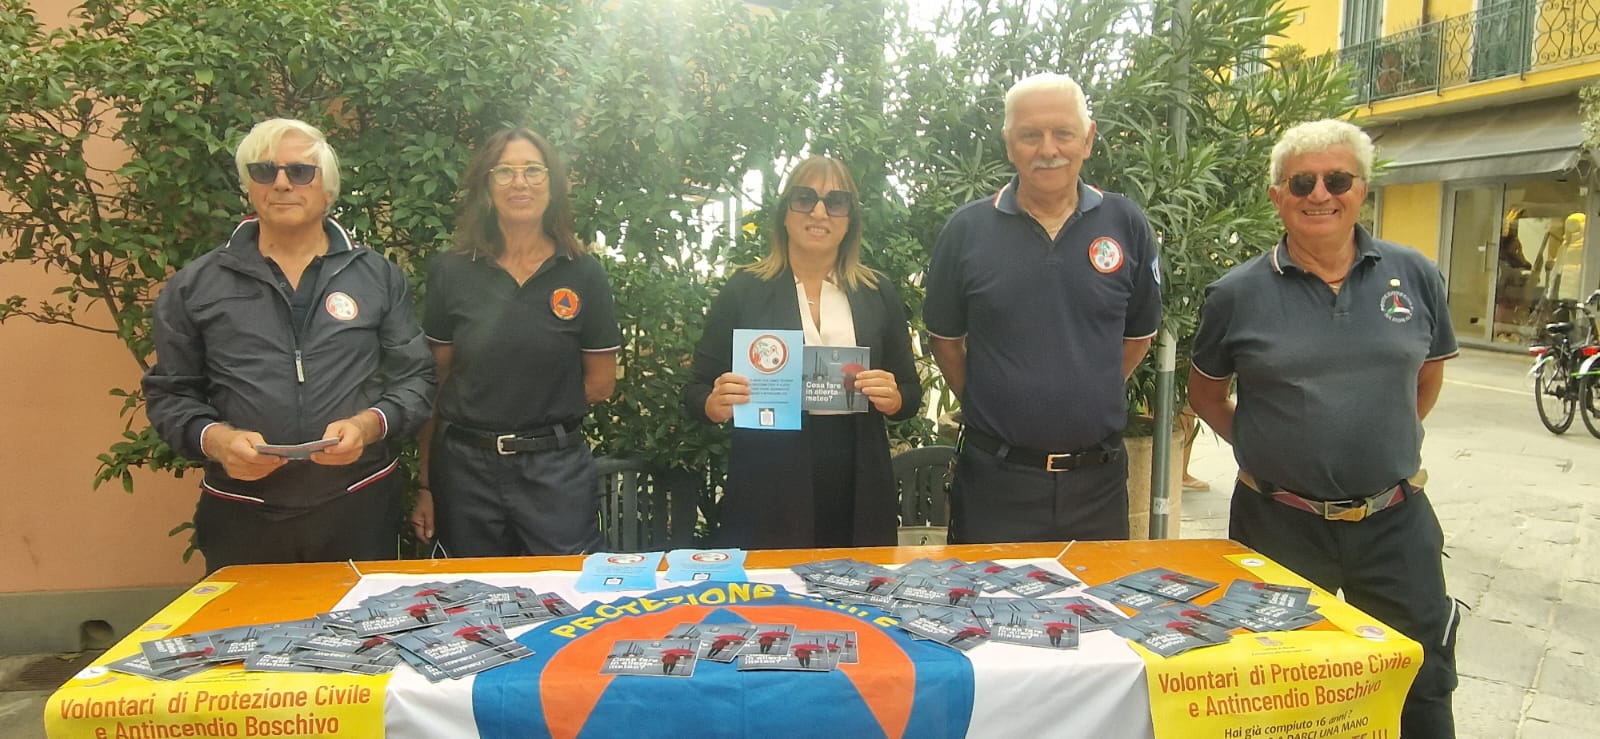 Per tutto il weekend il Gruppo Comunale di Protezione Civile e Antincendio Boschivo di Alassio incontra la cittadinanza